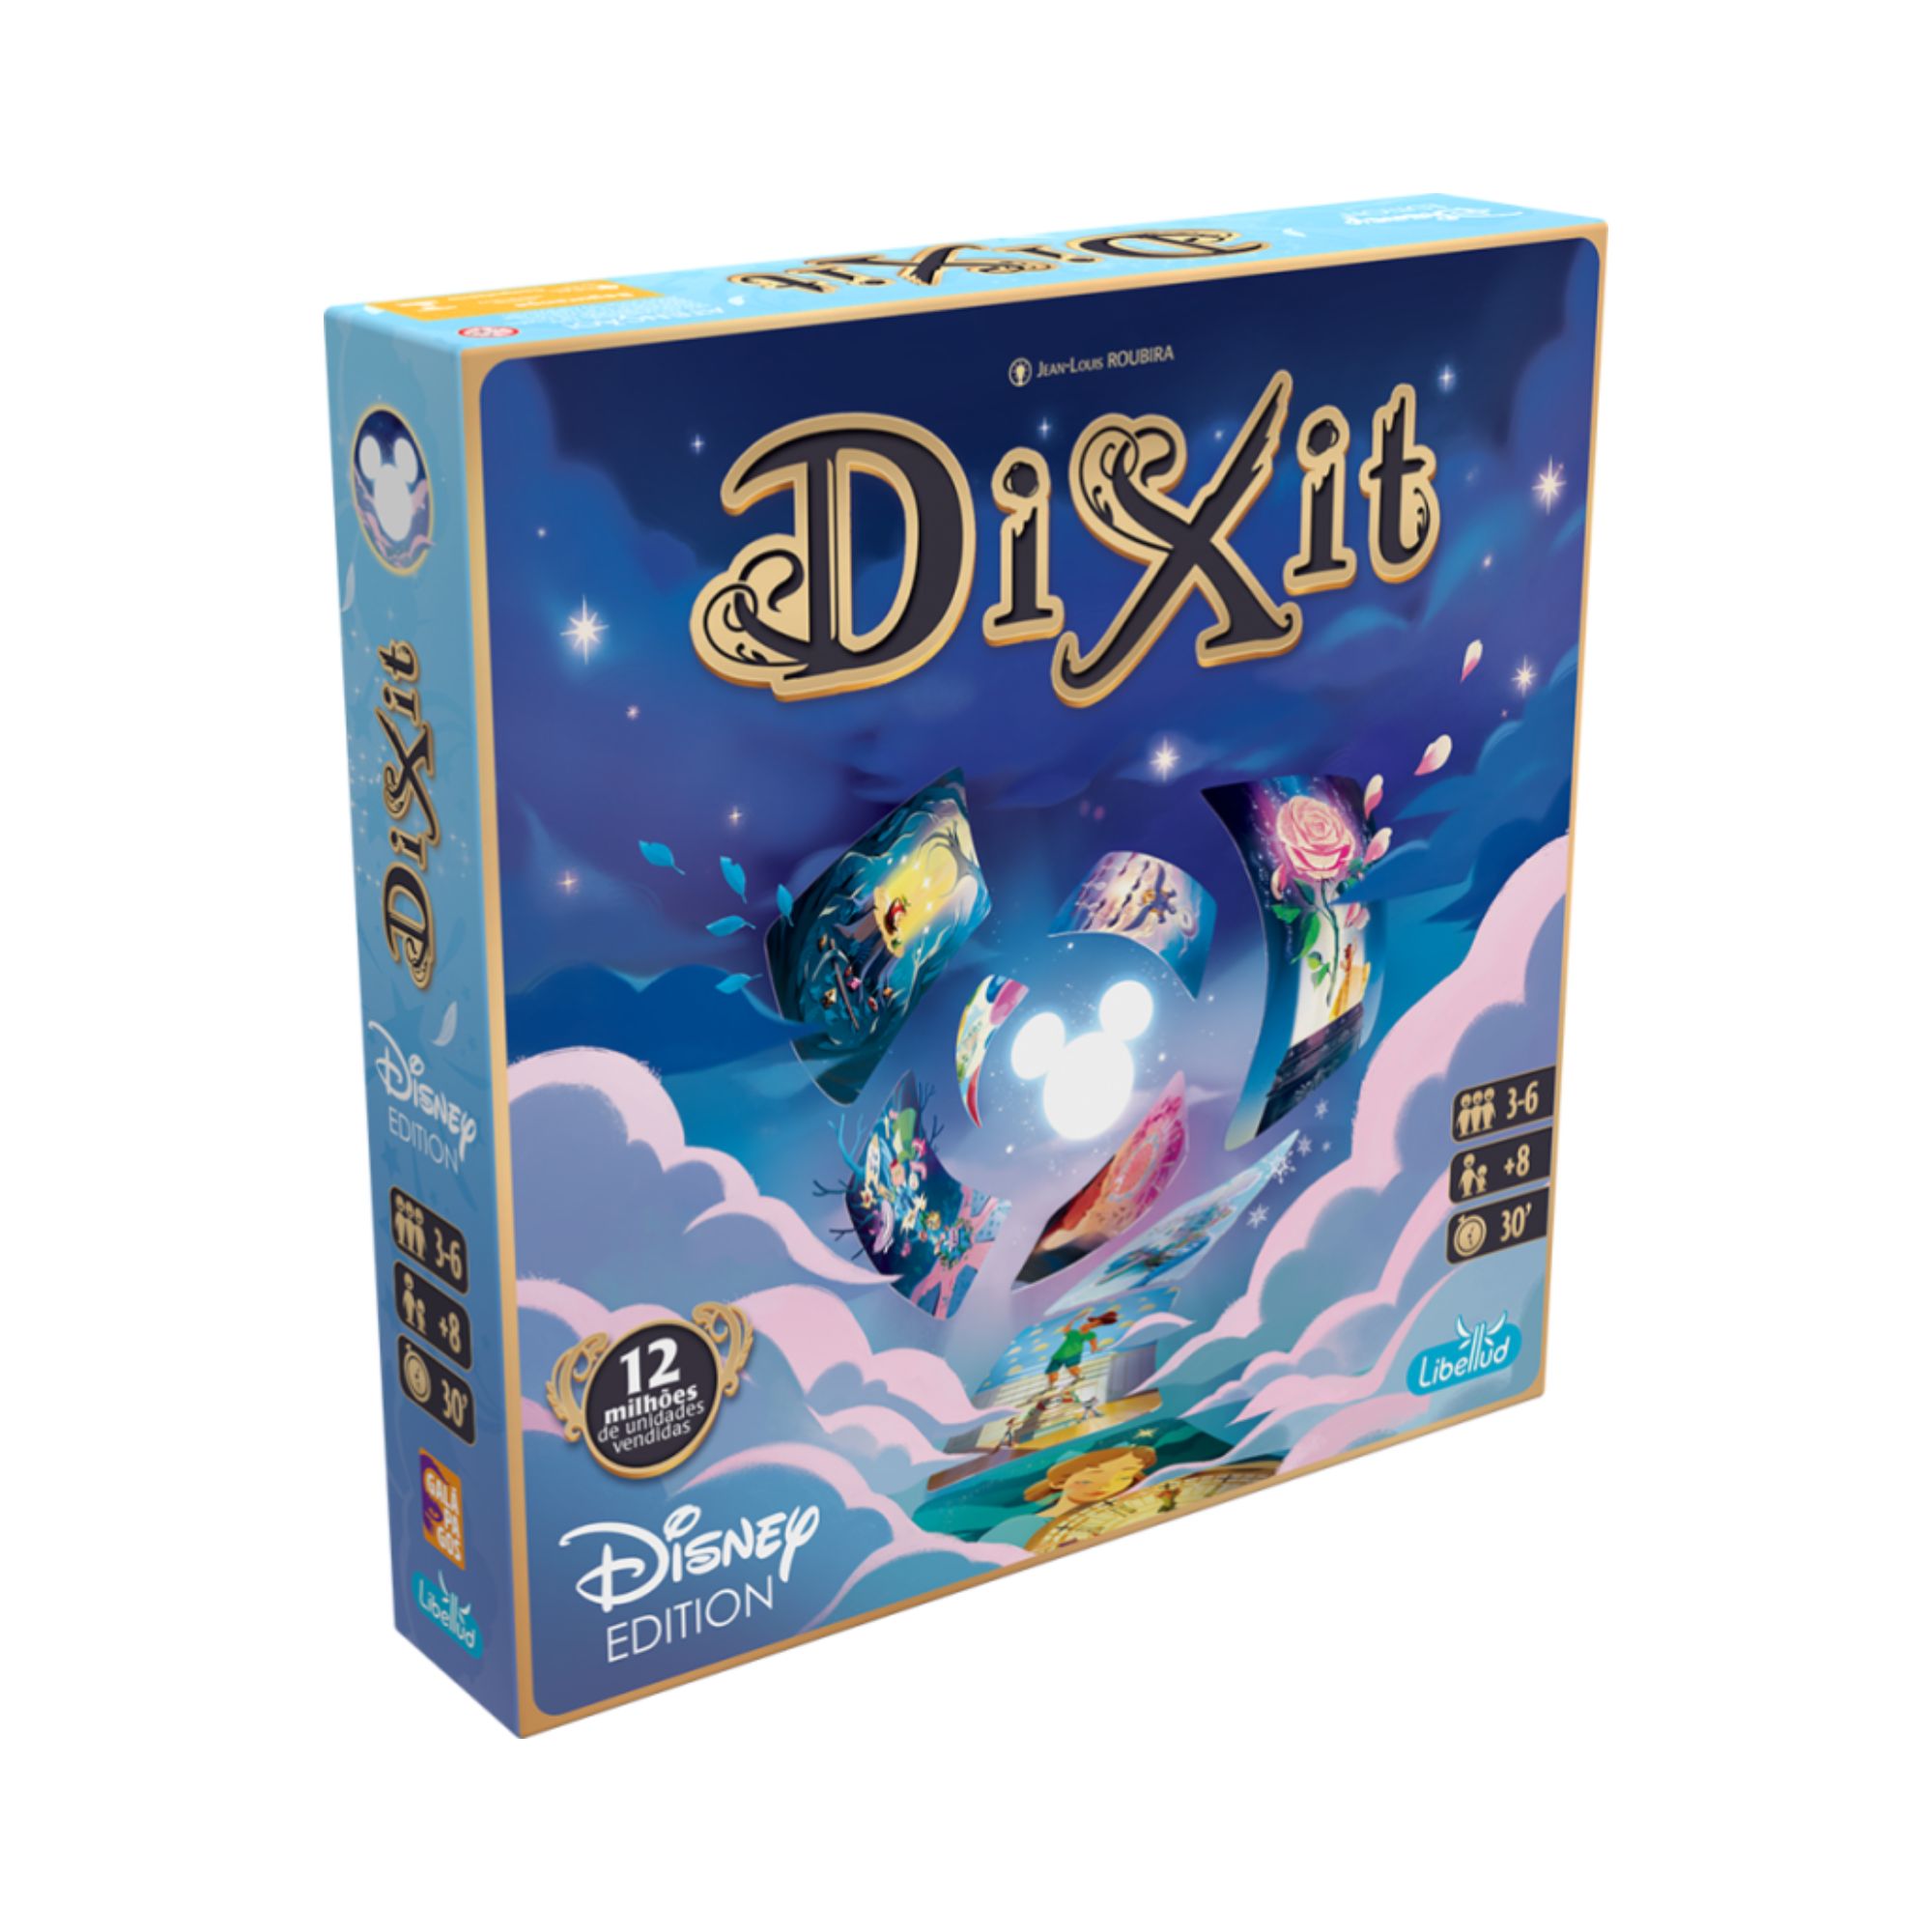 Dixit: Disney Edition + 1 meeple EXCLUSIVO (sortido)